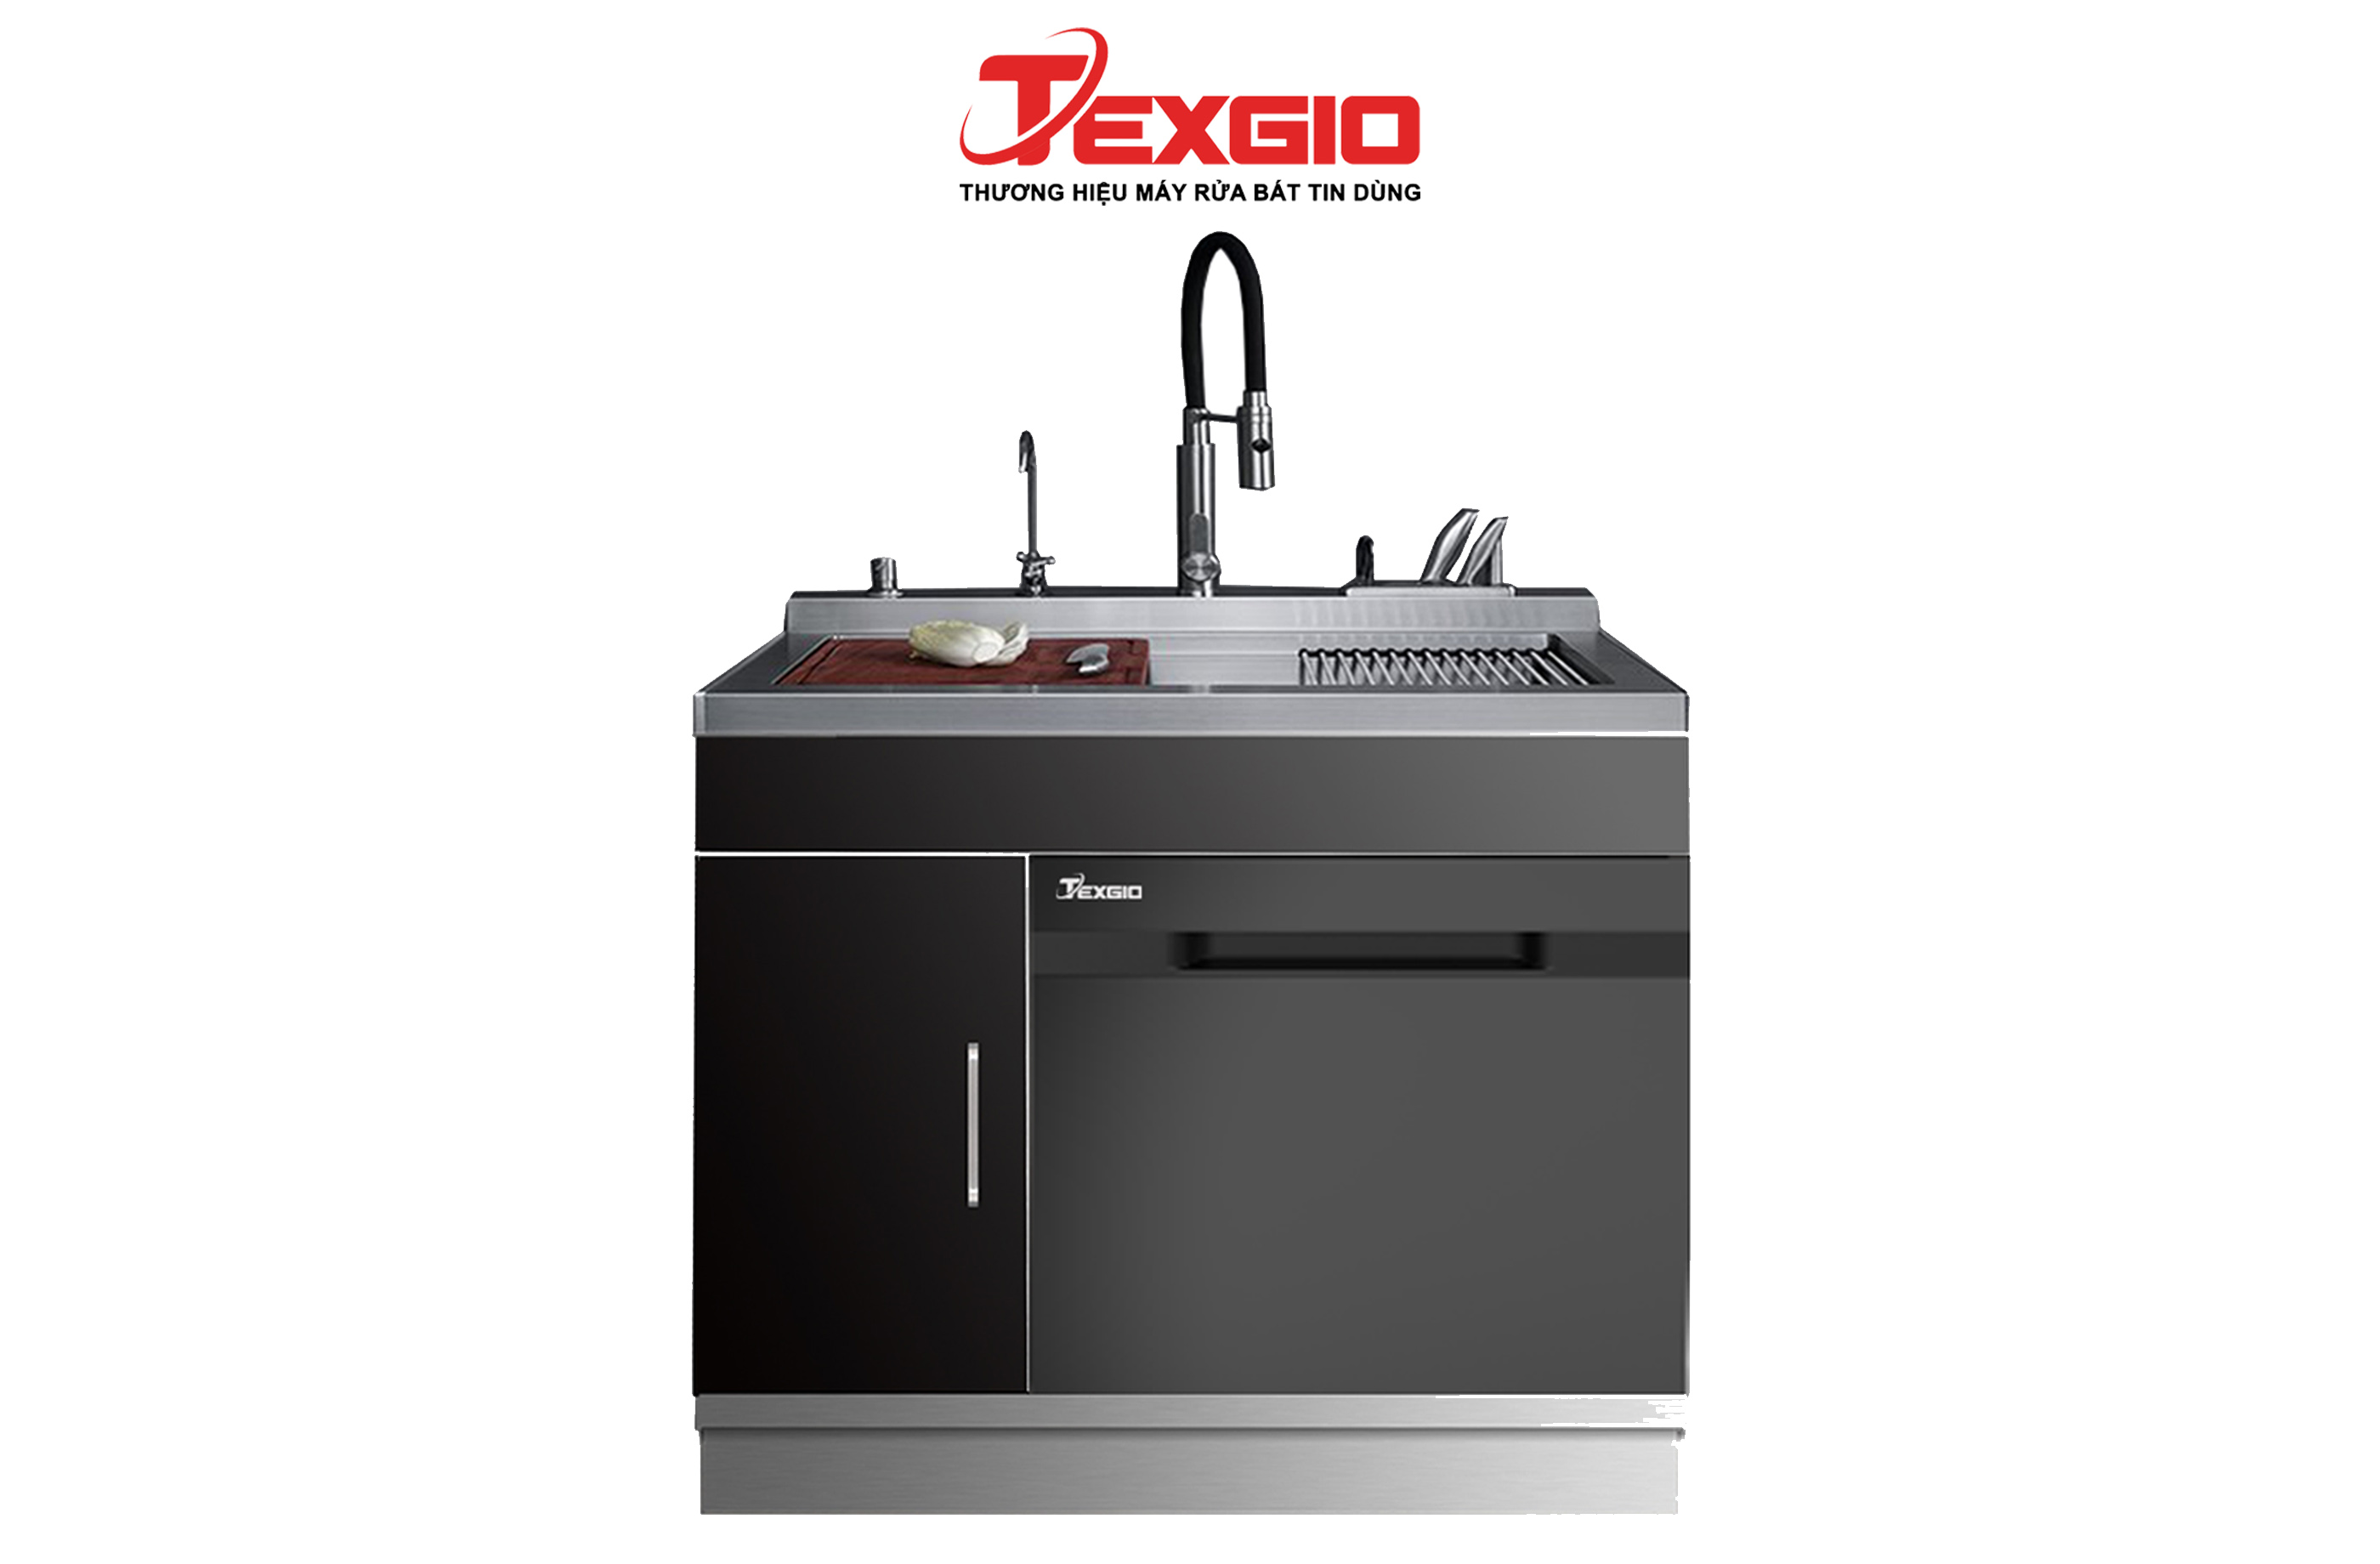 exgio Dishwasher TGUMF11S - 11 Bộ Đa Năng Tích Hợp Rửa Sóng Siêu Âm, Sấy Khí Nóng, UV